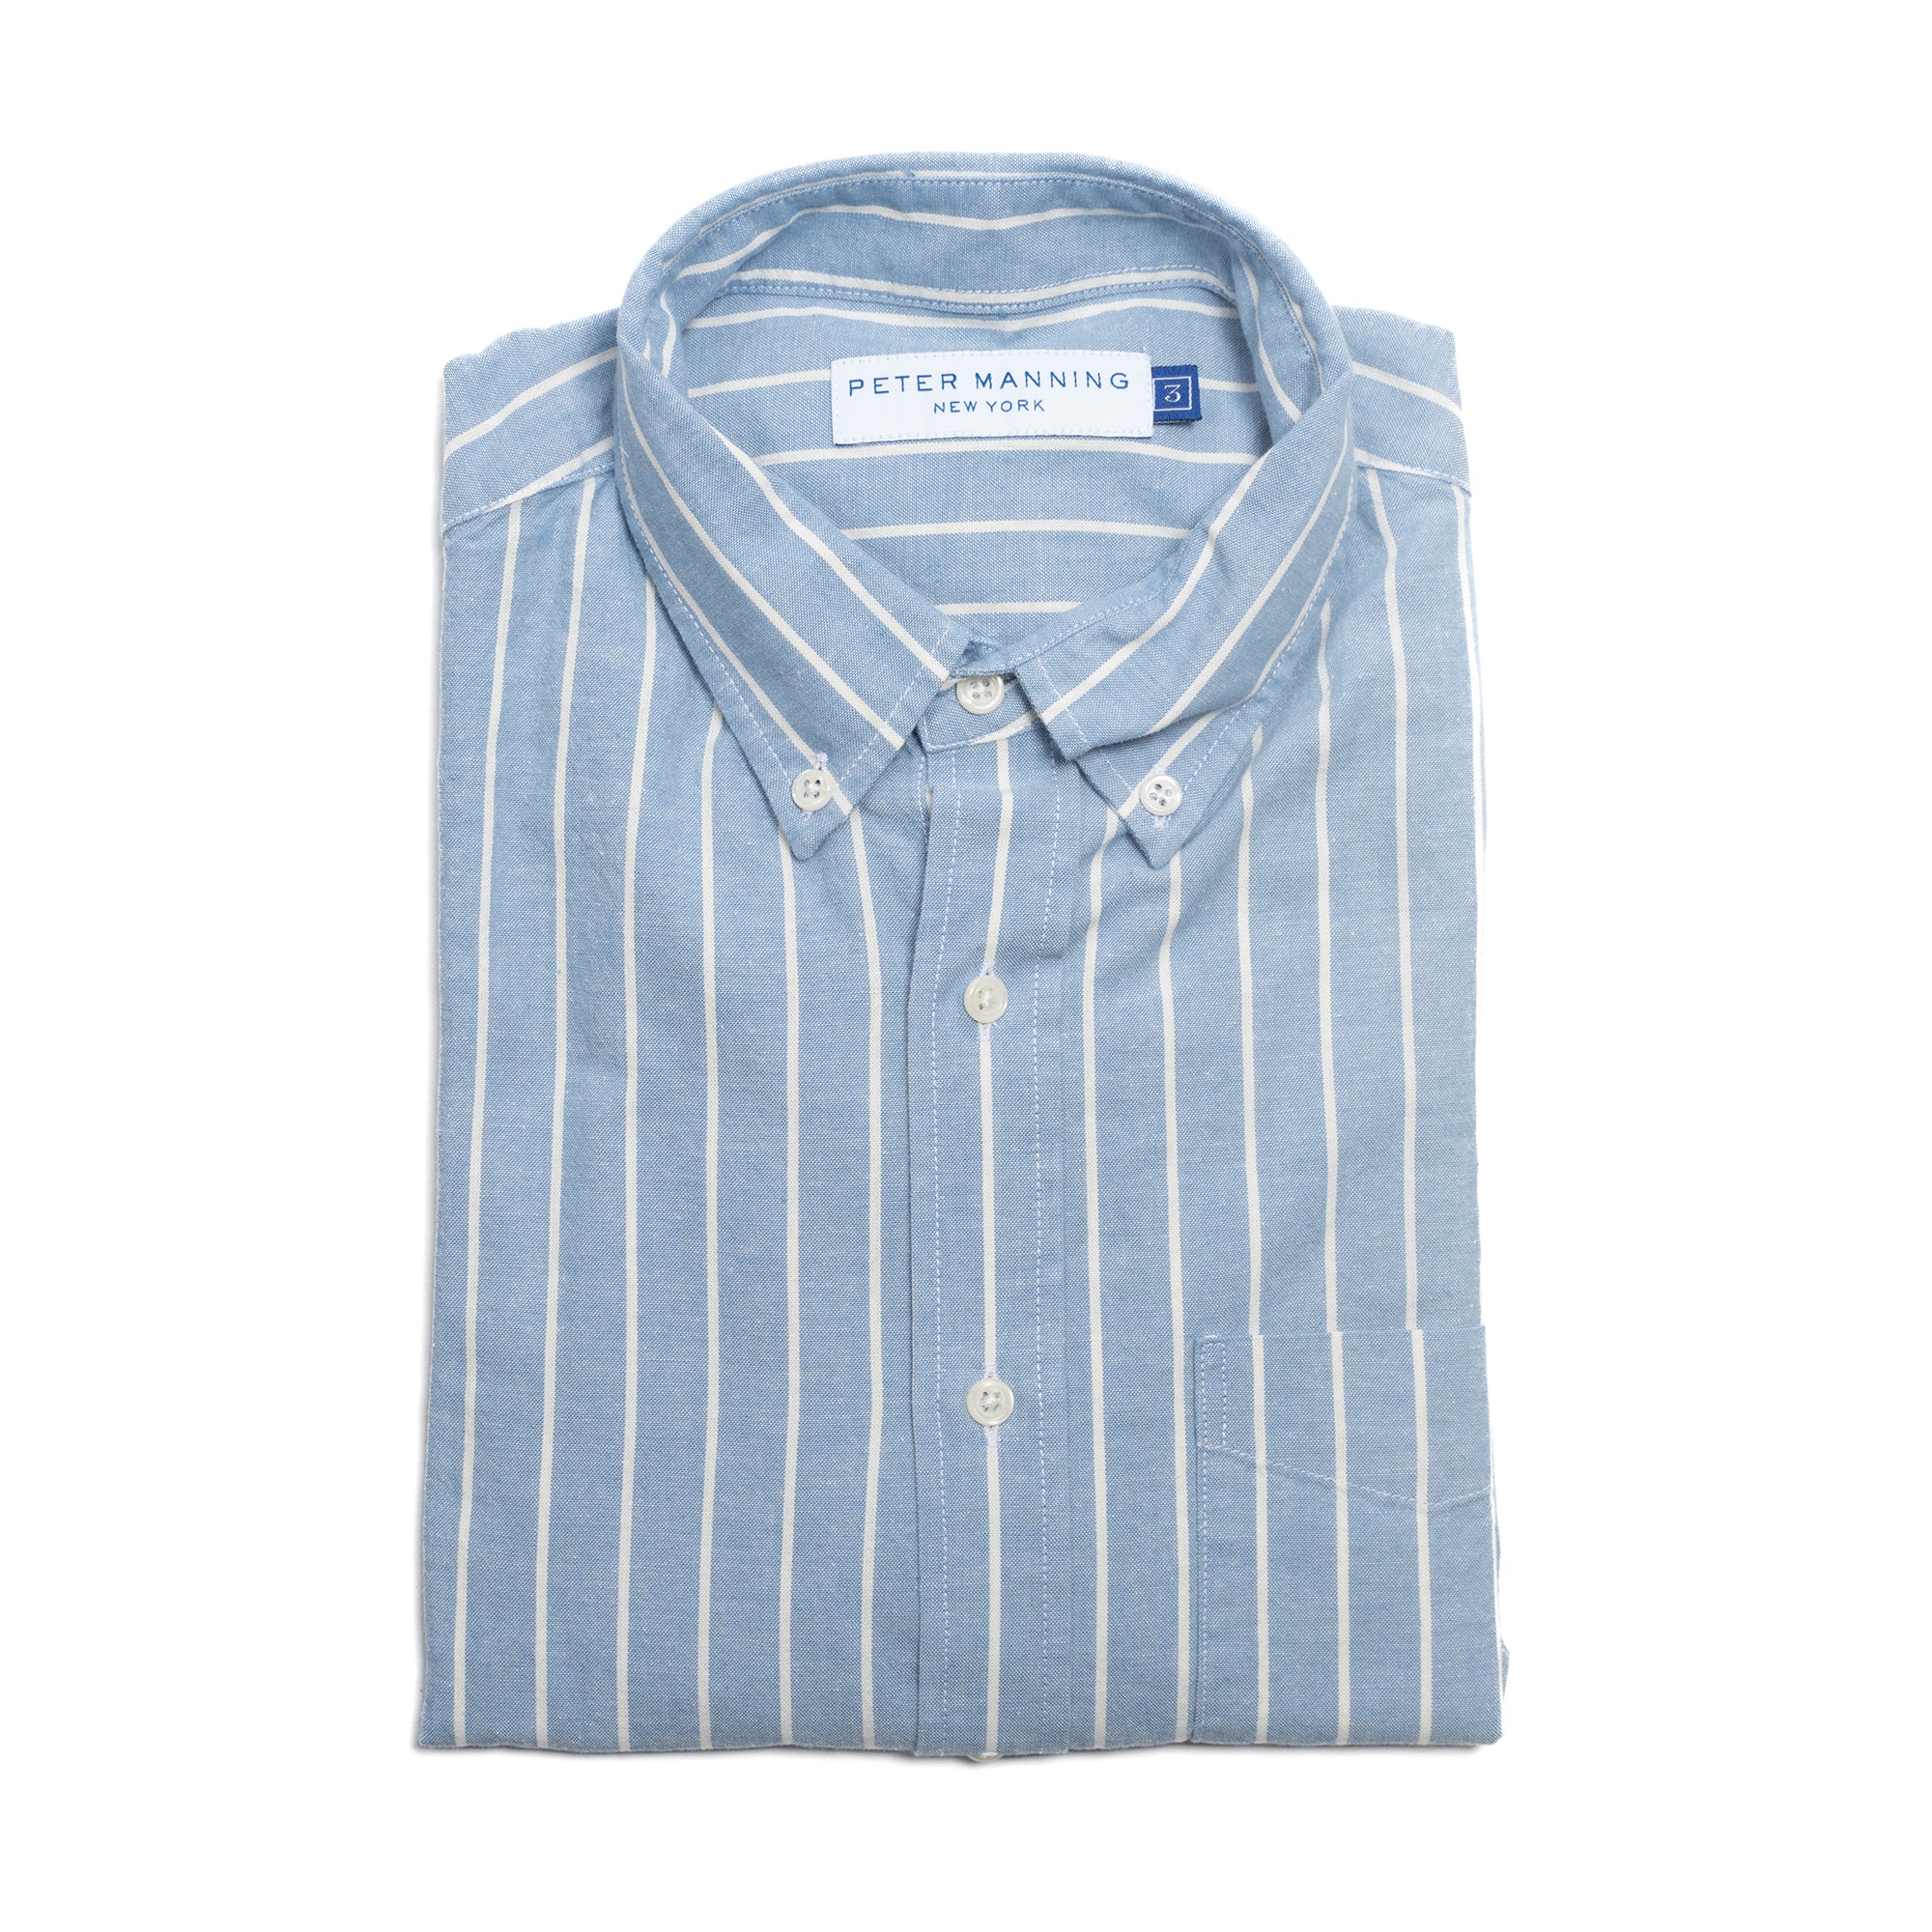 Chambray Fabric - Chambray Stripes For Shirts AT-20-424